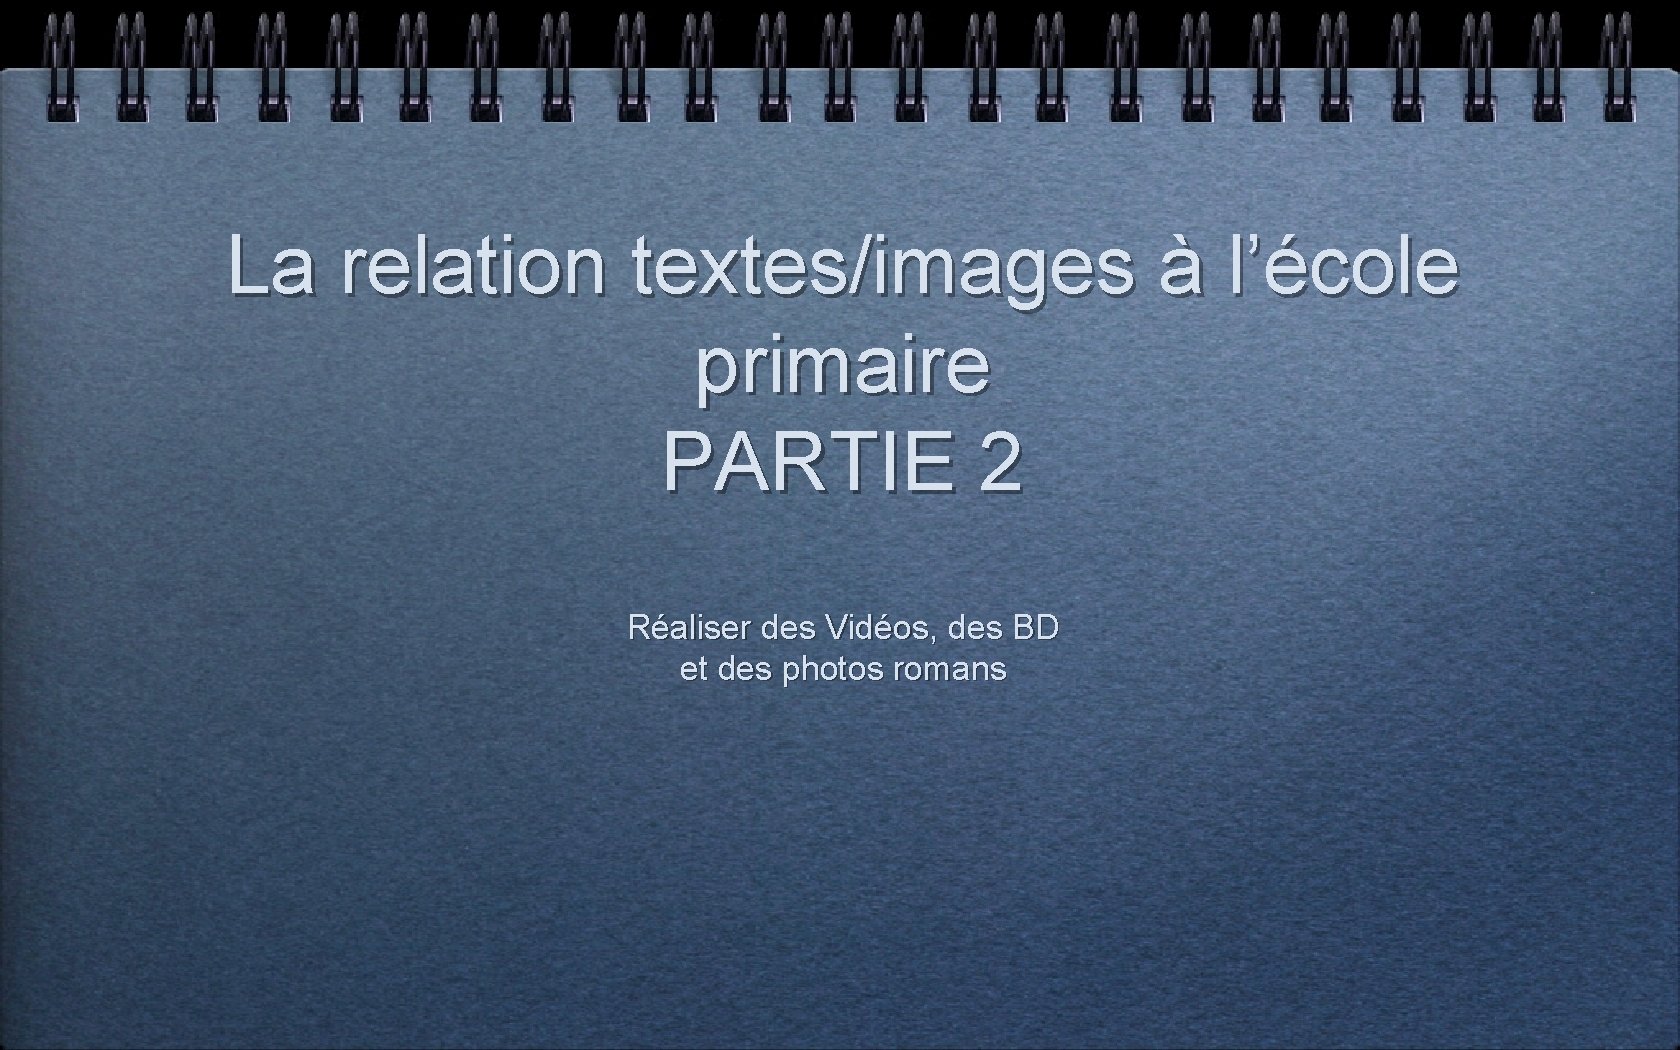 La relation textes/images à l’école primaire PARTIE 2 Réaliser des Vidéos, des BD et